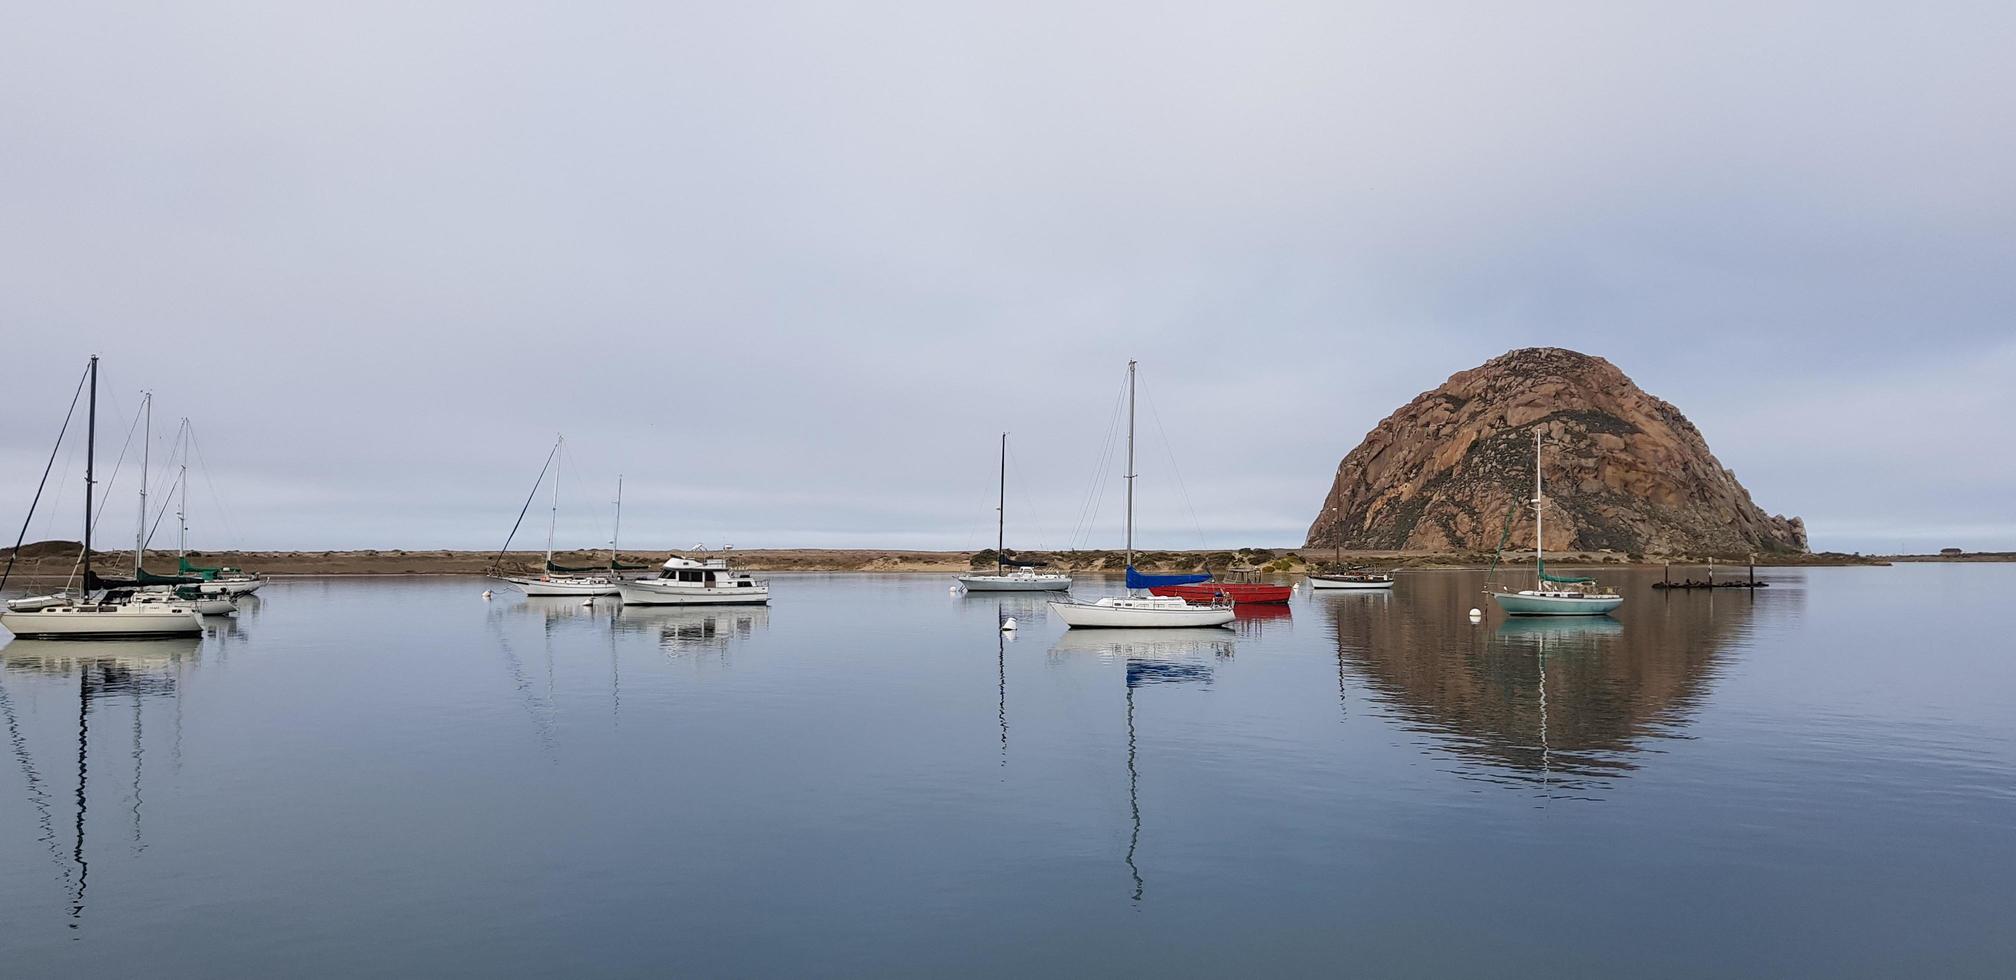 morrow bay, ca 2020 - tidigt på morgonen på vattnet foto